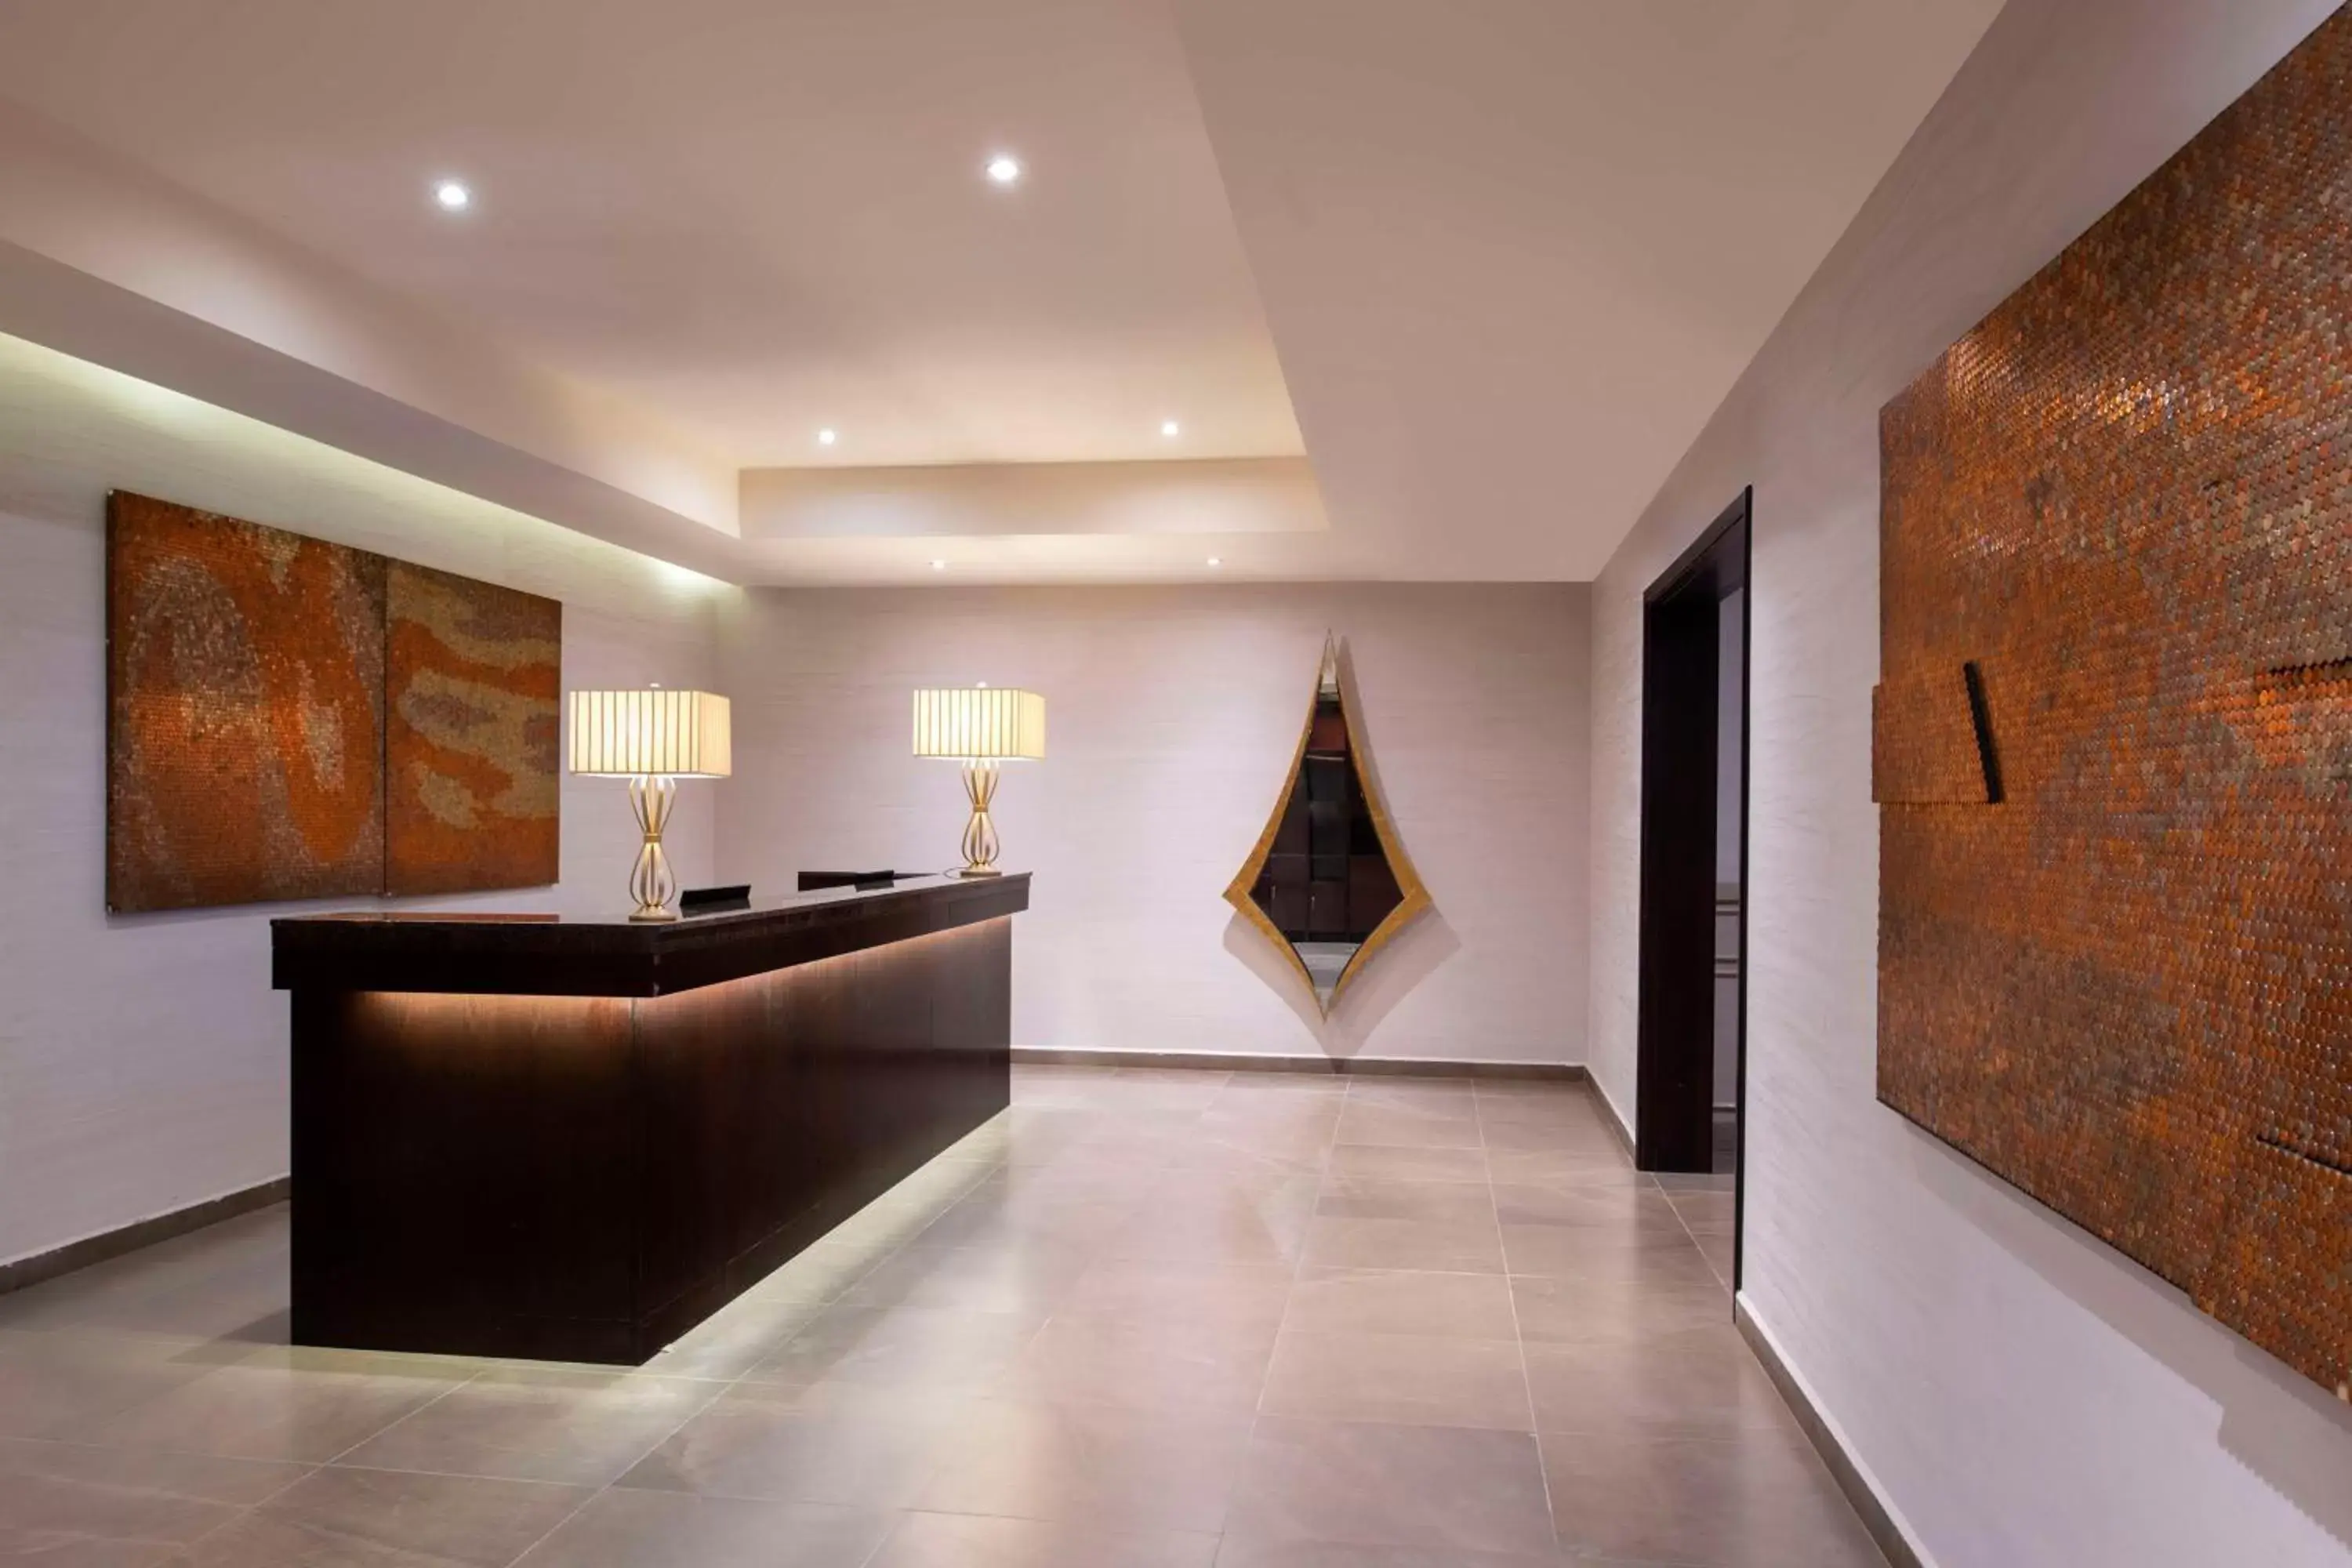 Lobby or reception, Lobby/Reception in Kempinski Hotel Gold Coast City